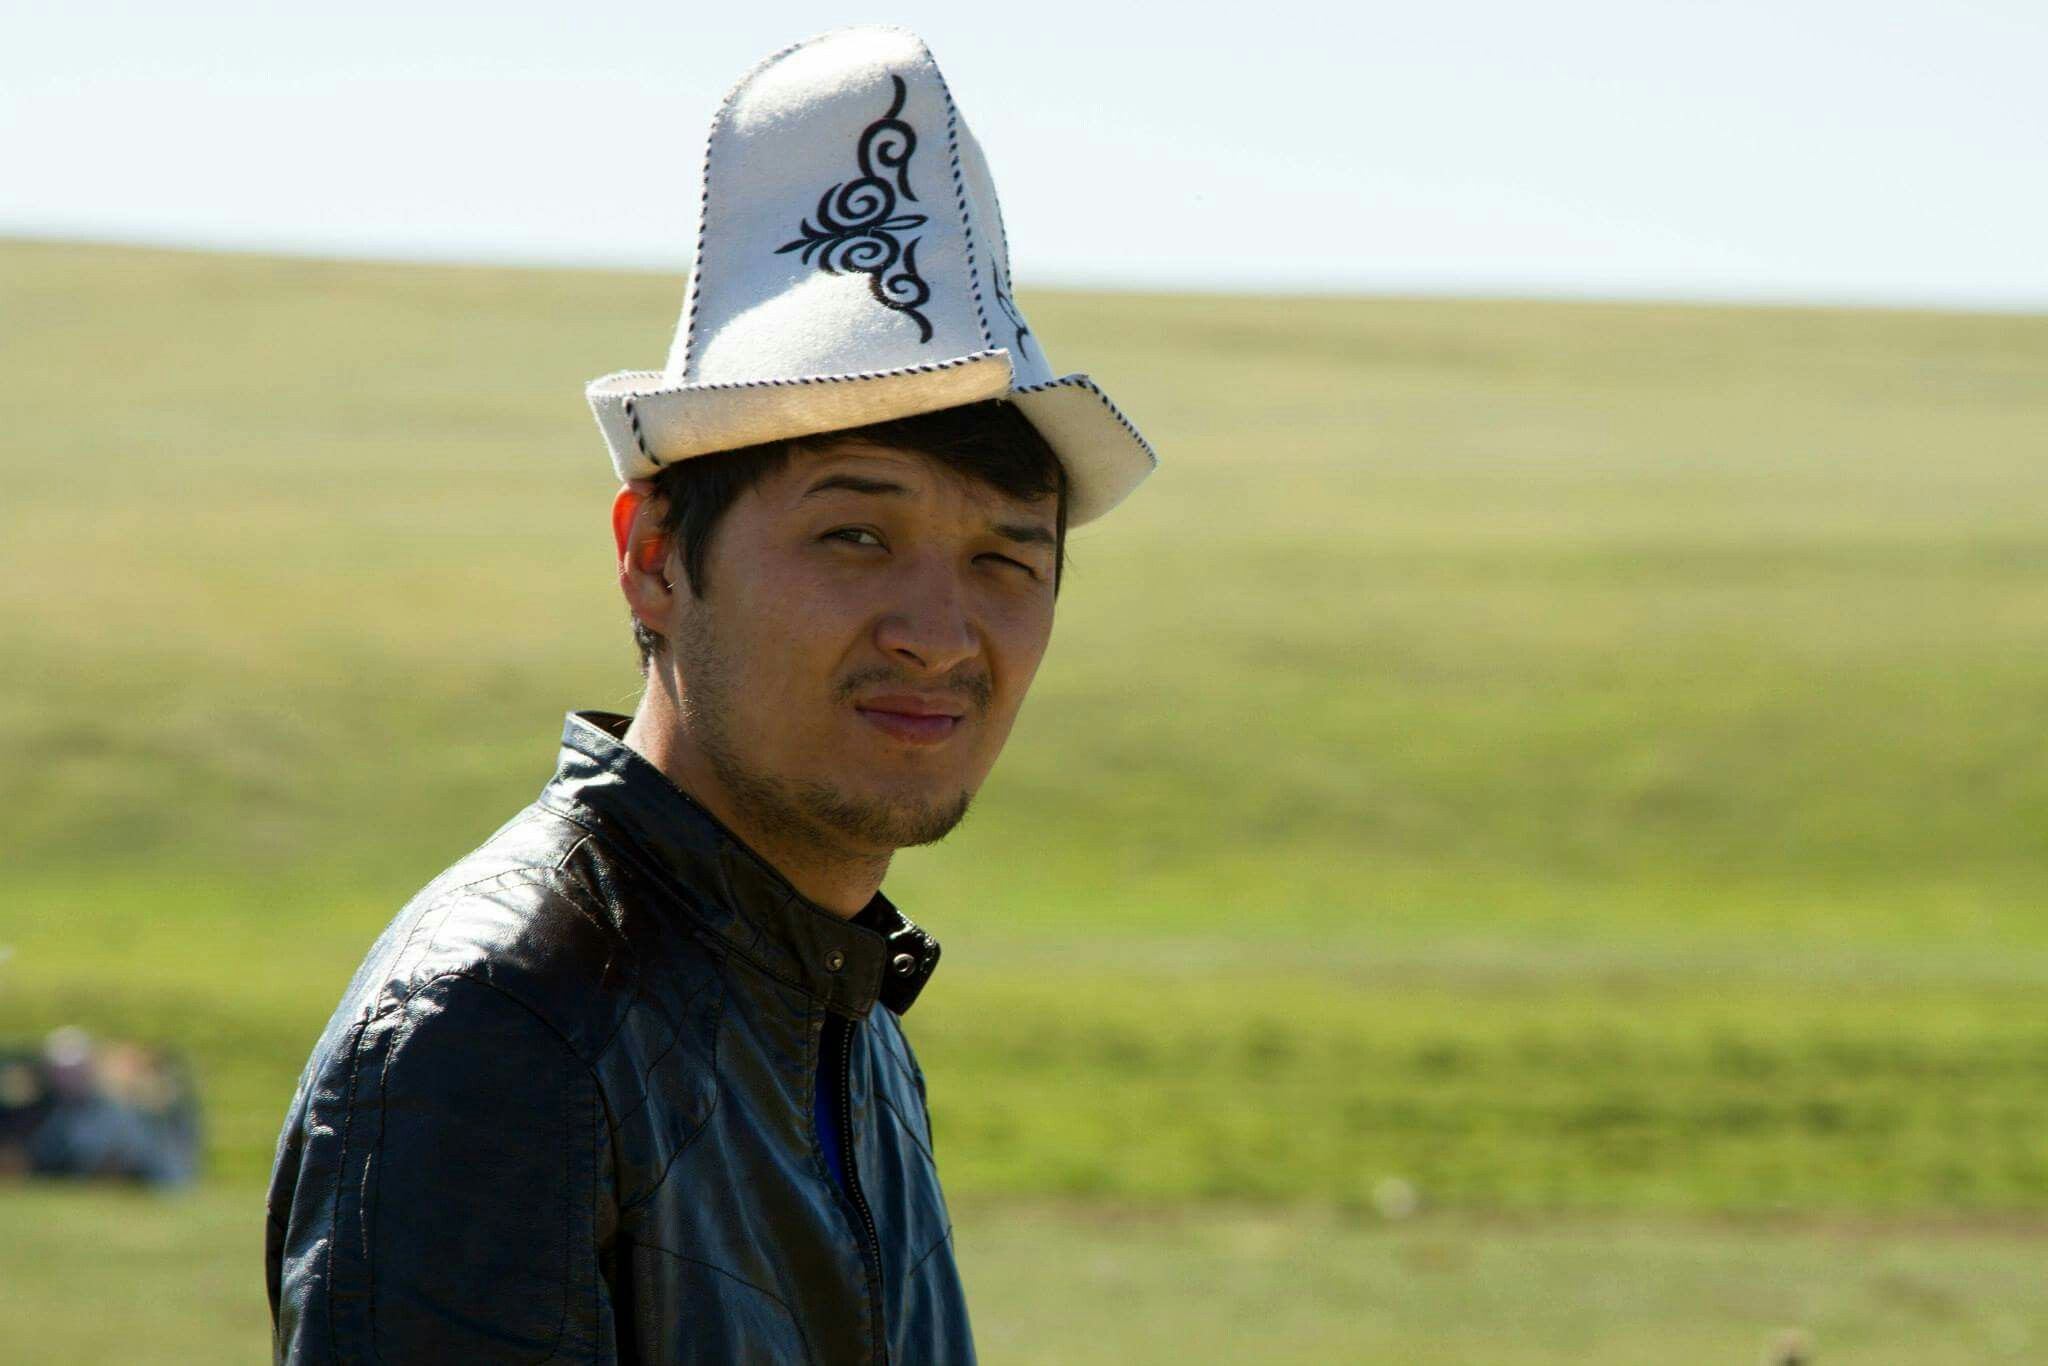 Сайт киргизов